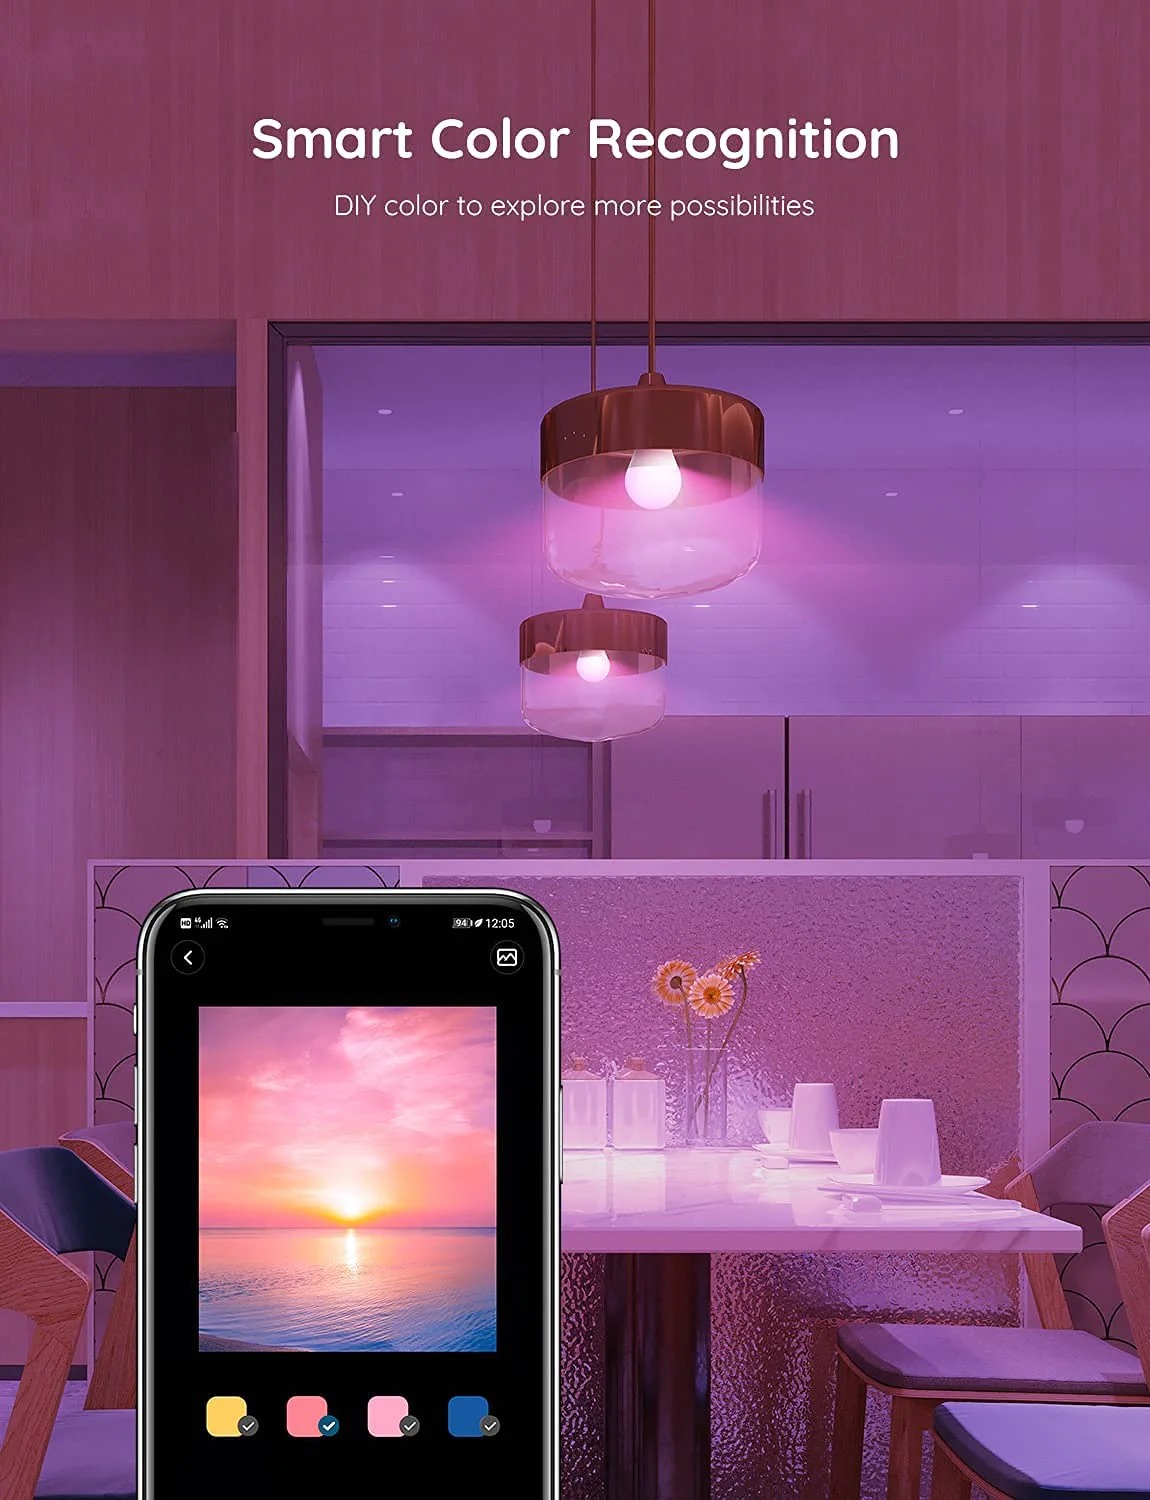 Bóng led đổi màu Govee Wi-Fi LED H6003 | Điều khiển thông minh qua App, 16 triệu màu và 10 hiệu ứng, Nhấp nháy theo nhạc